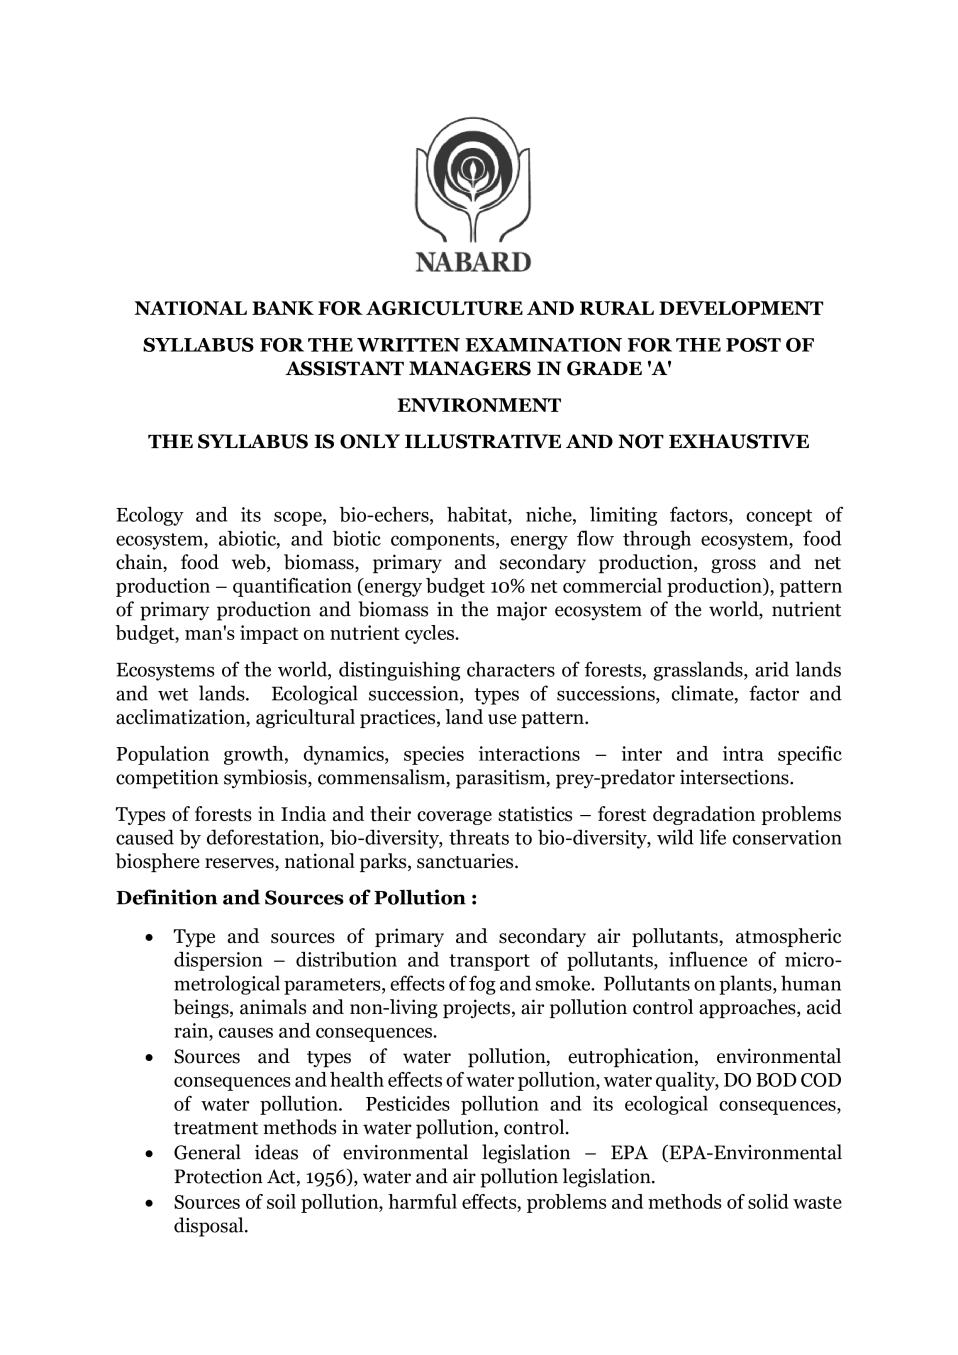 NABARD Grade A Syllabus 2020 Environment - Page 1